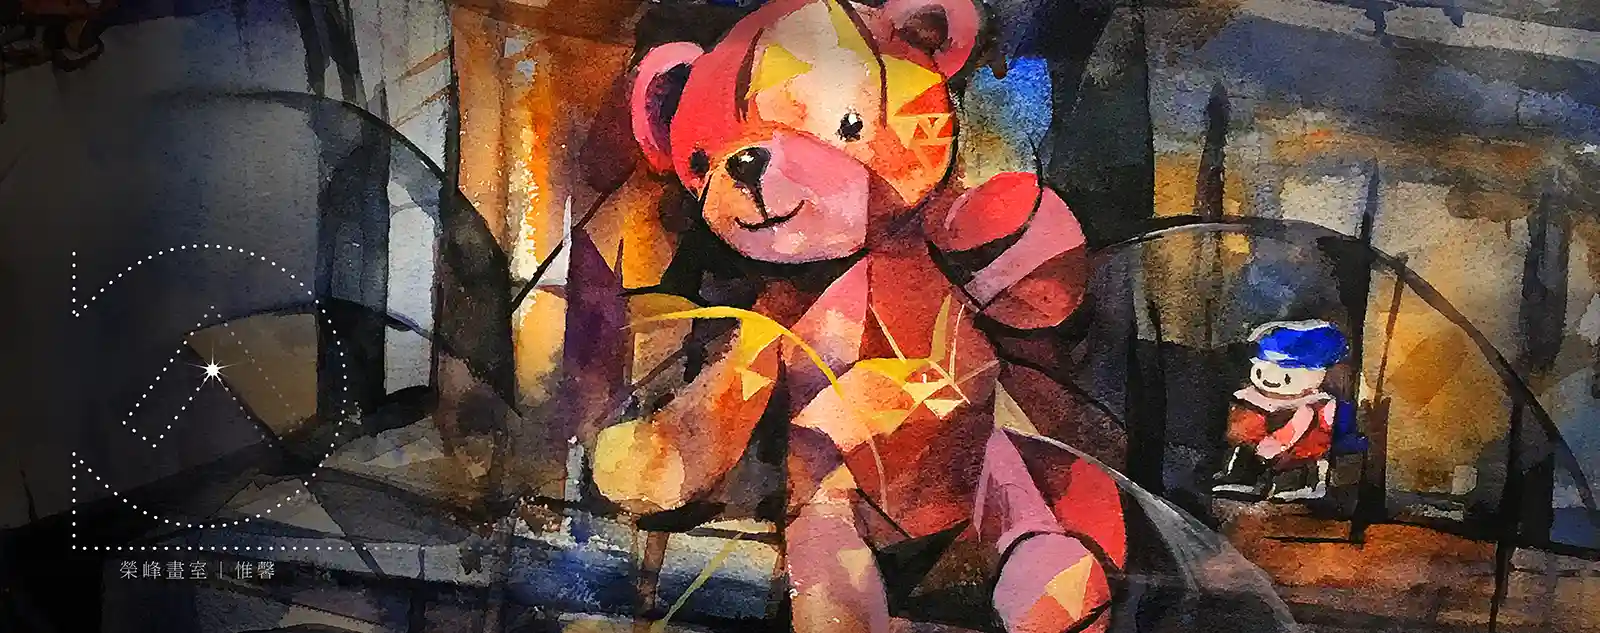 《水彩畫-熊與玩具兵》，作者：維馨，水彩畫。